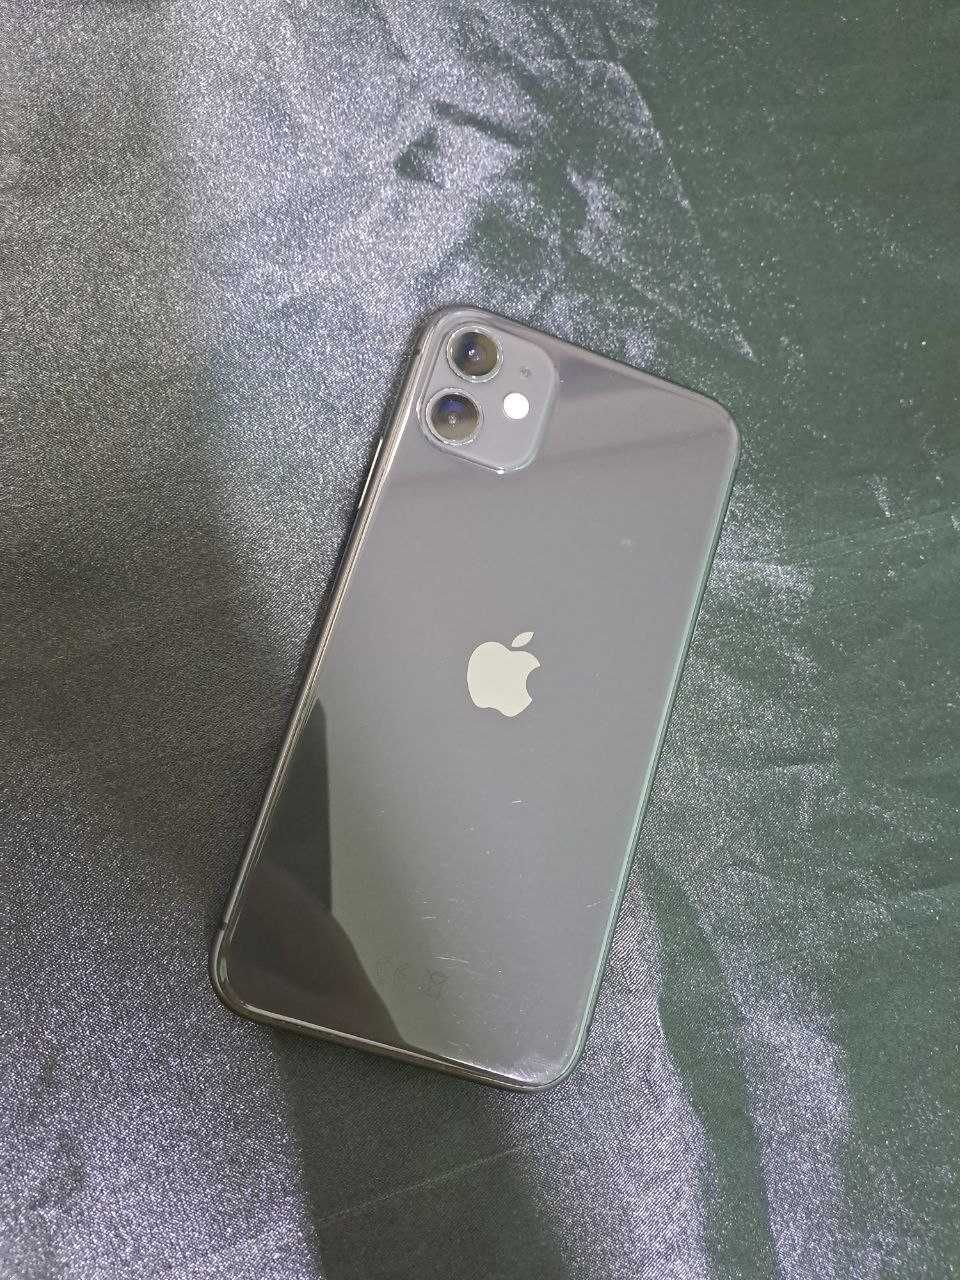 Apple iPhone 11 ( Караганда г. Абай ул, Абай 52) лот  327170